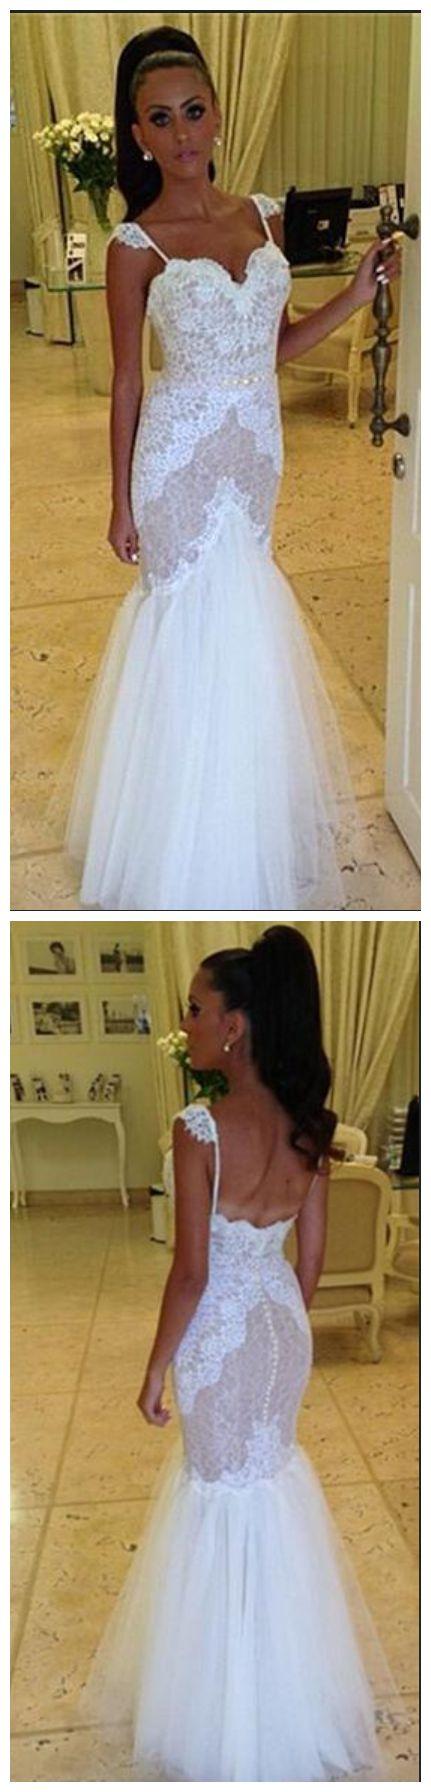 Hochzeit - Wedding Dresses, Wedding Gown,Lace Wedding Gowns,Ball Gown Bridal Dress,Fitted Wedding Dress,Corset Brides Dress,Vintage Wedding Gowns From Mfprom